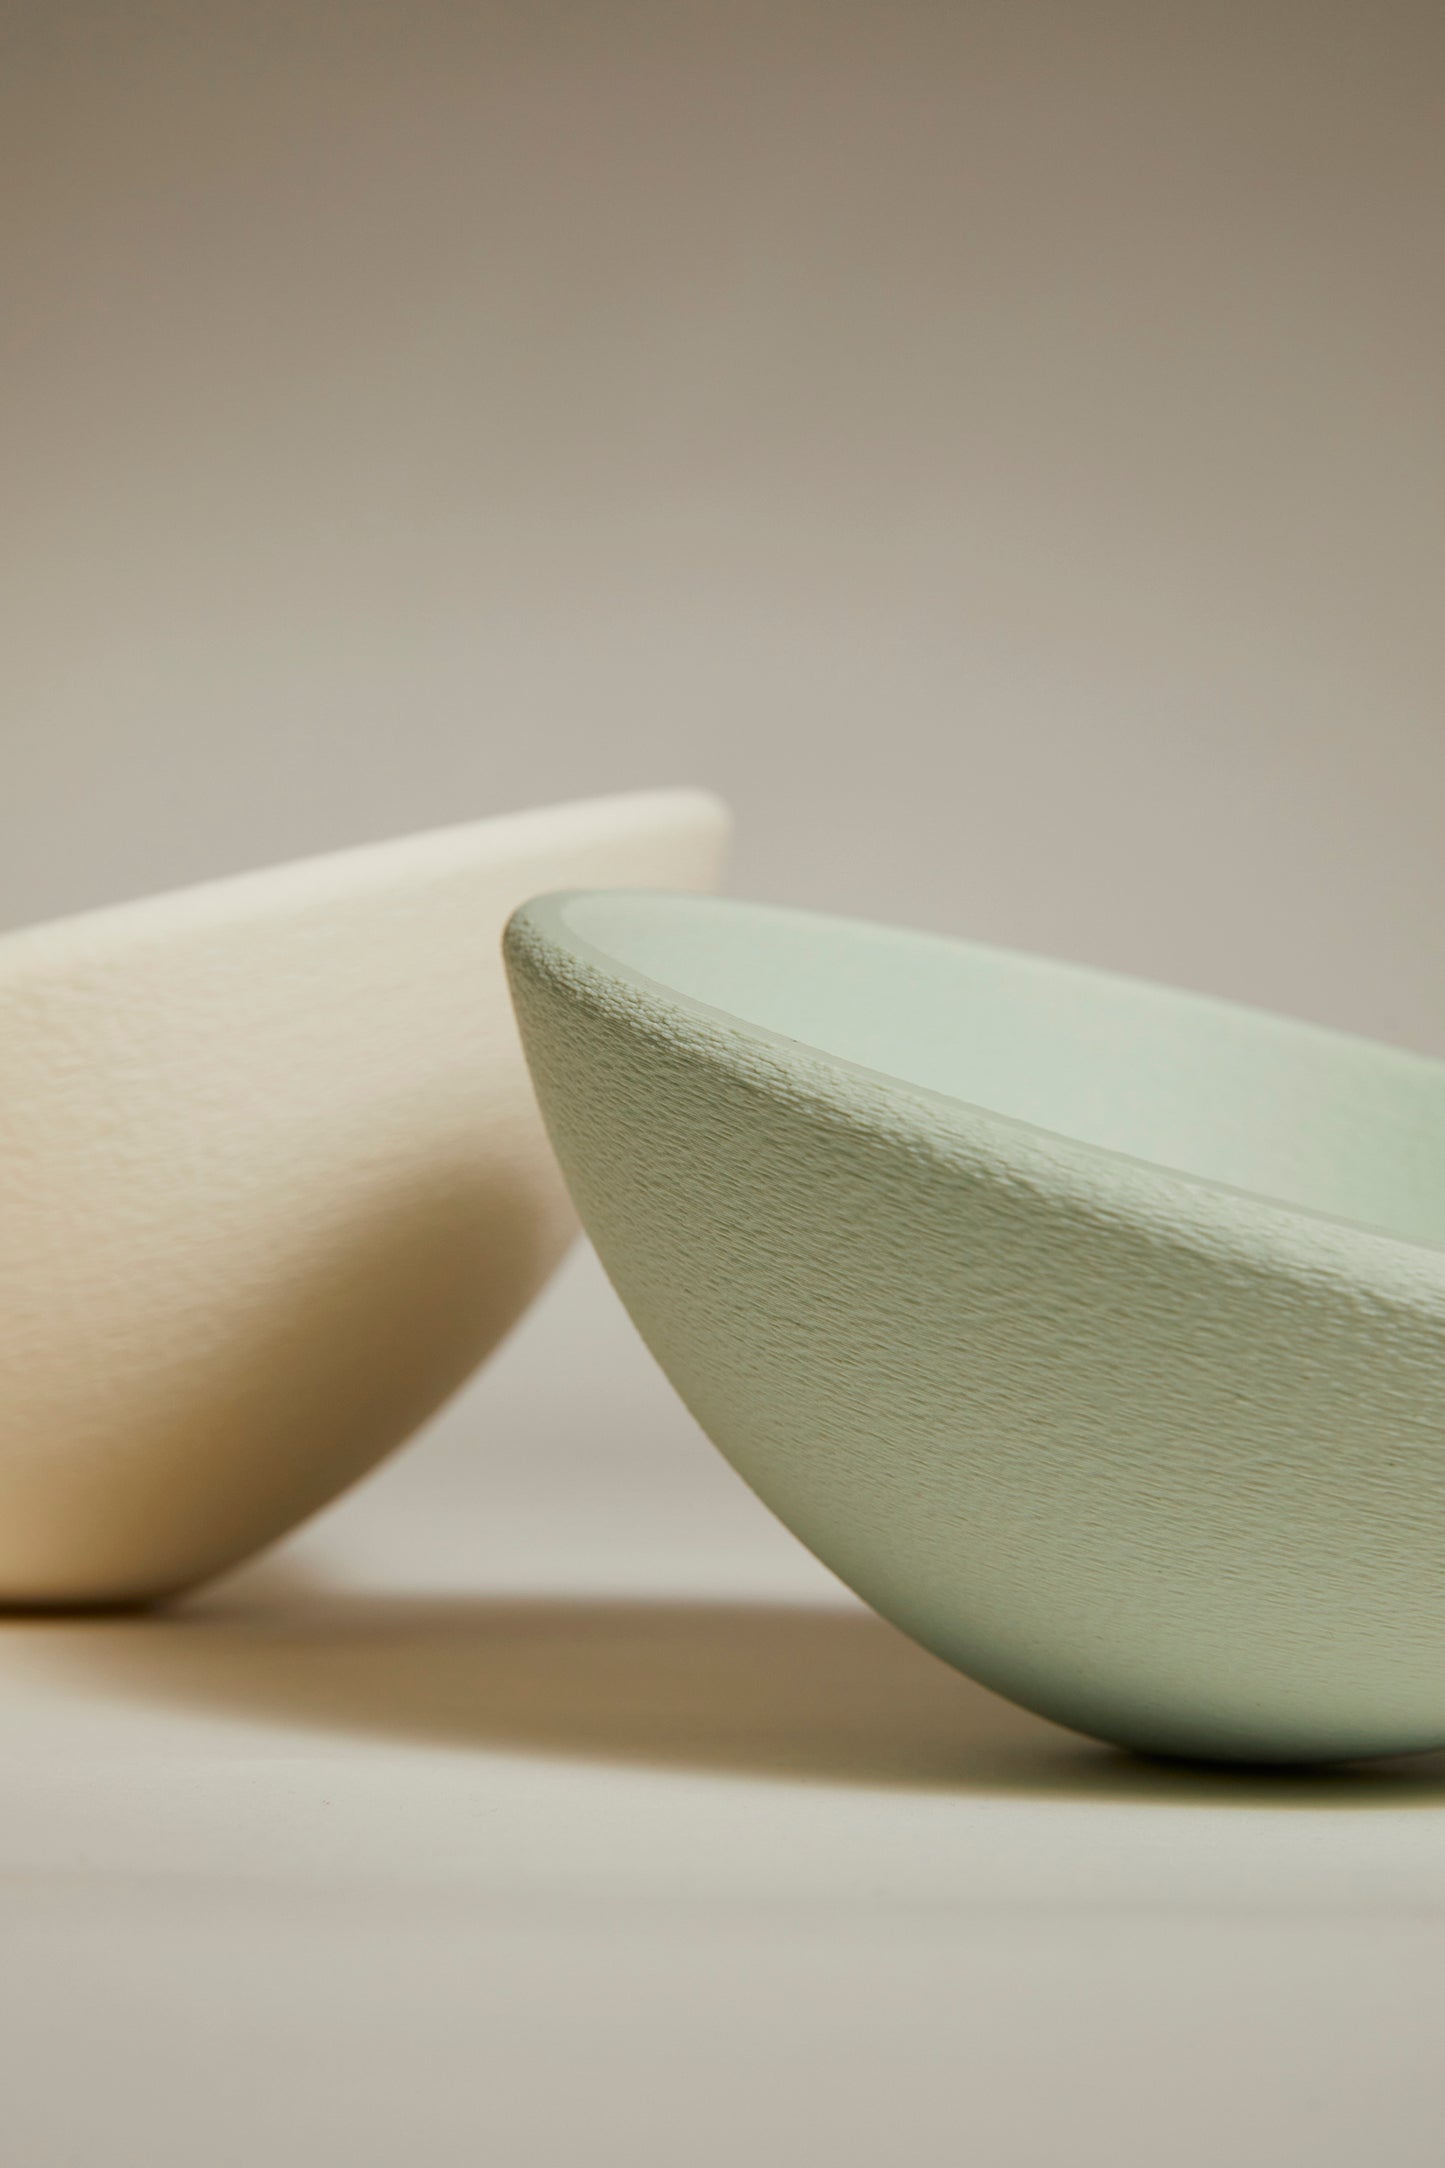 3D printed bowls